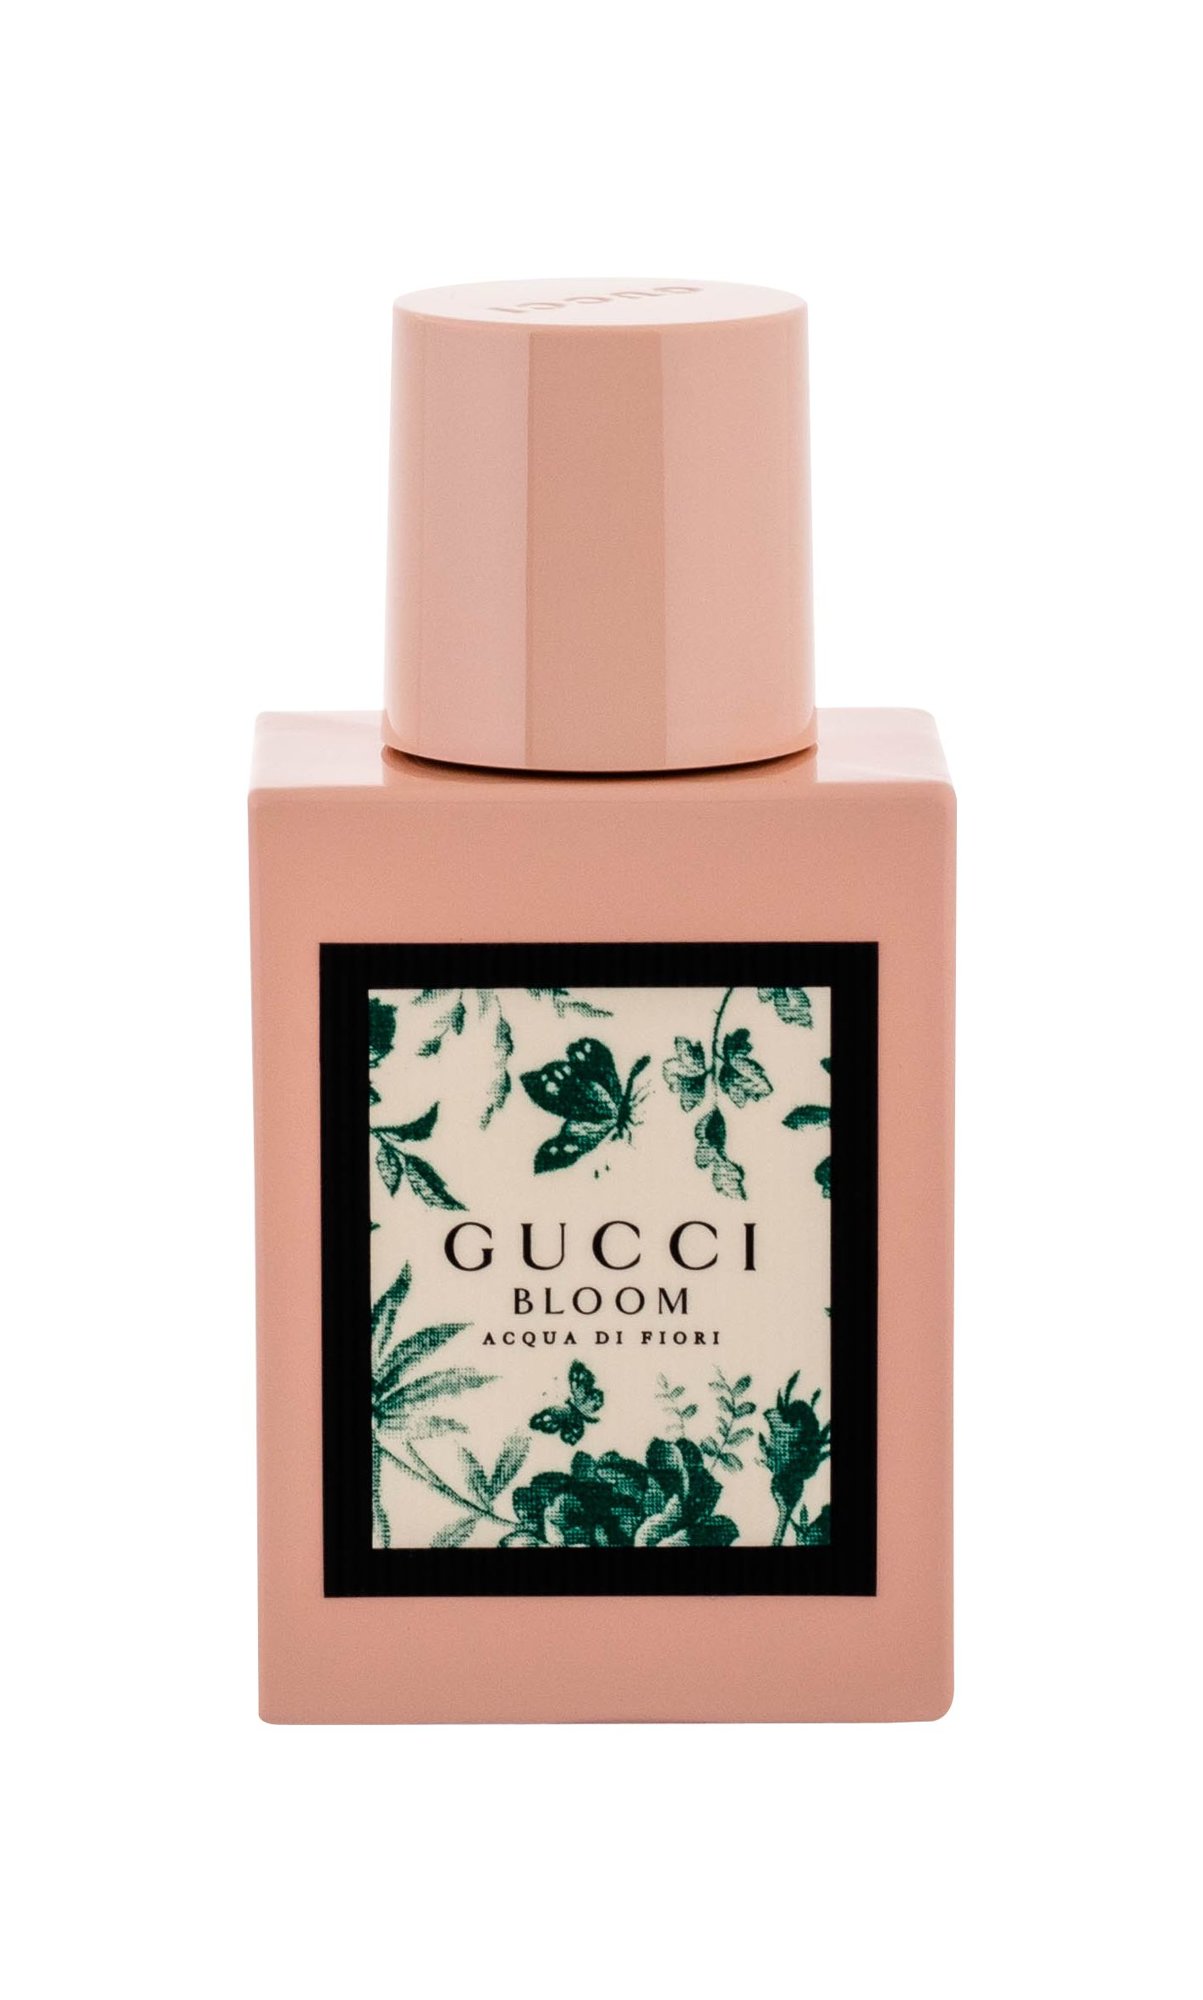 Gucci Bloom Acqua di Fiori, edt 30ml